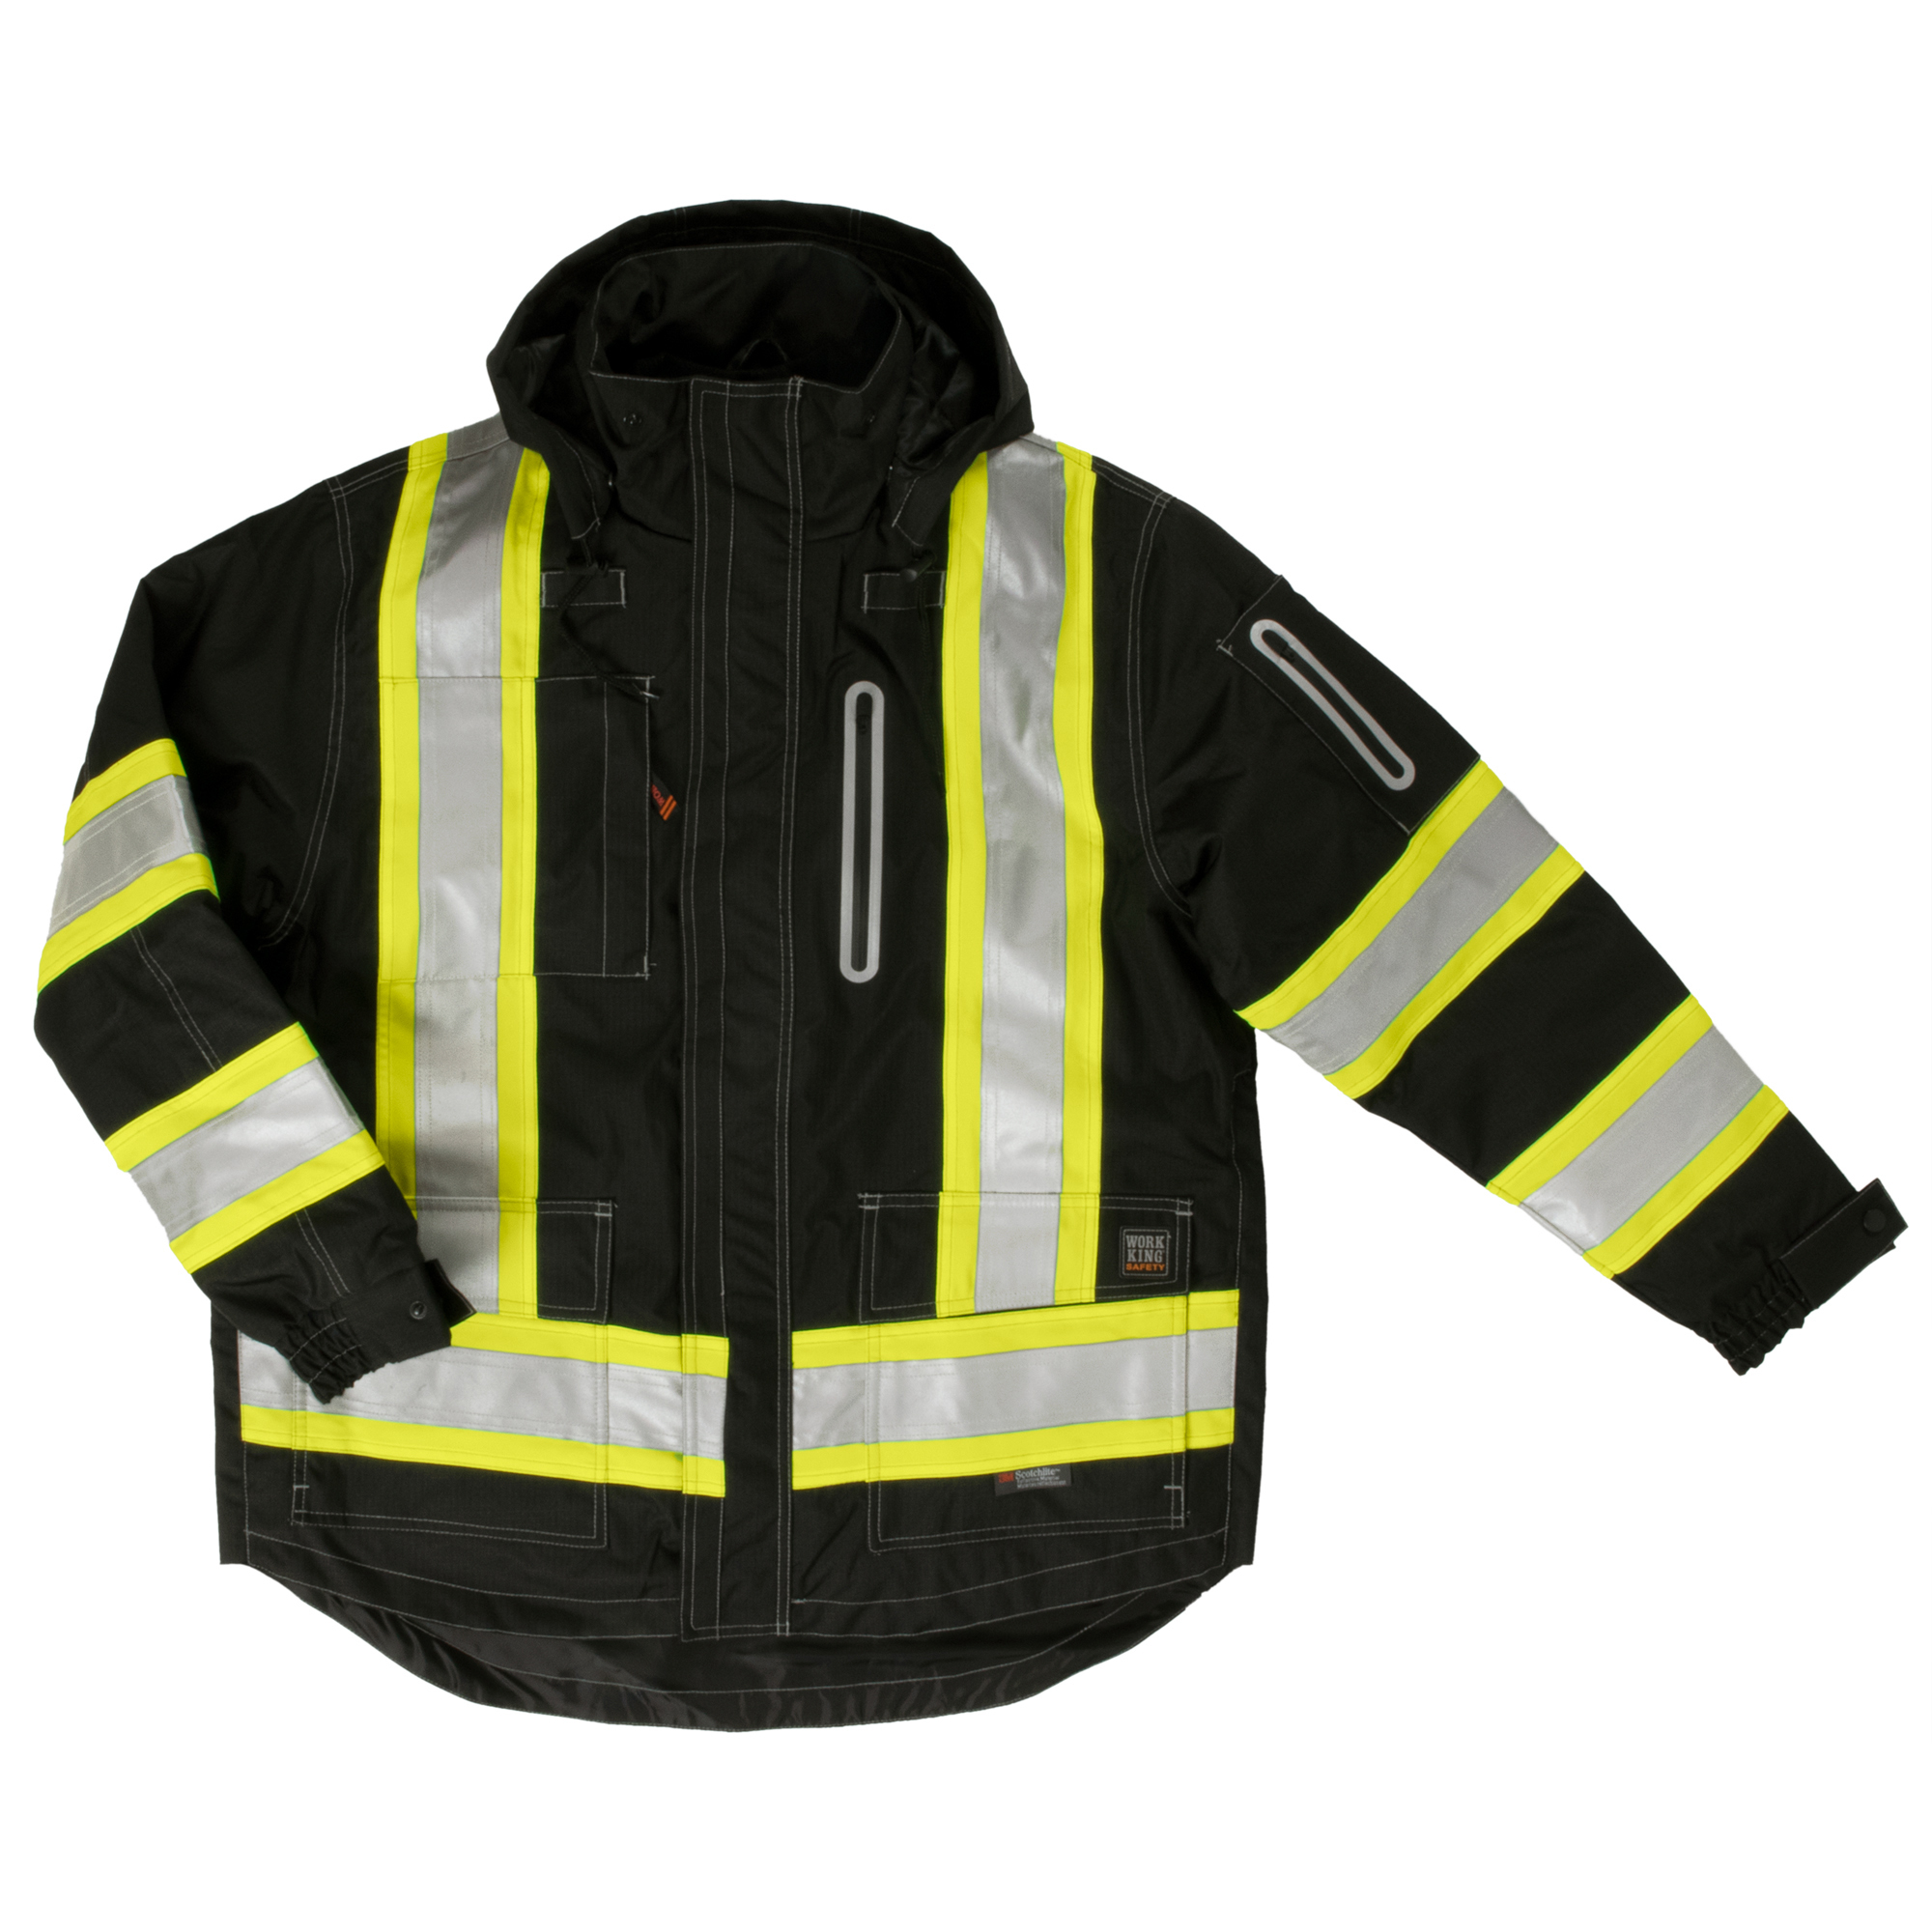 Tough Duck, 4Inch-1 Safety Jacket, Size L, Color BLACK, Model S18711-BLK-L